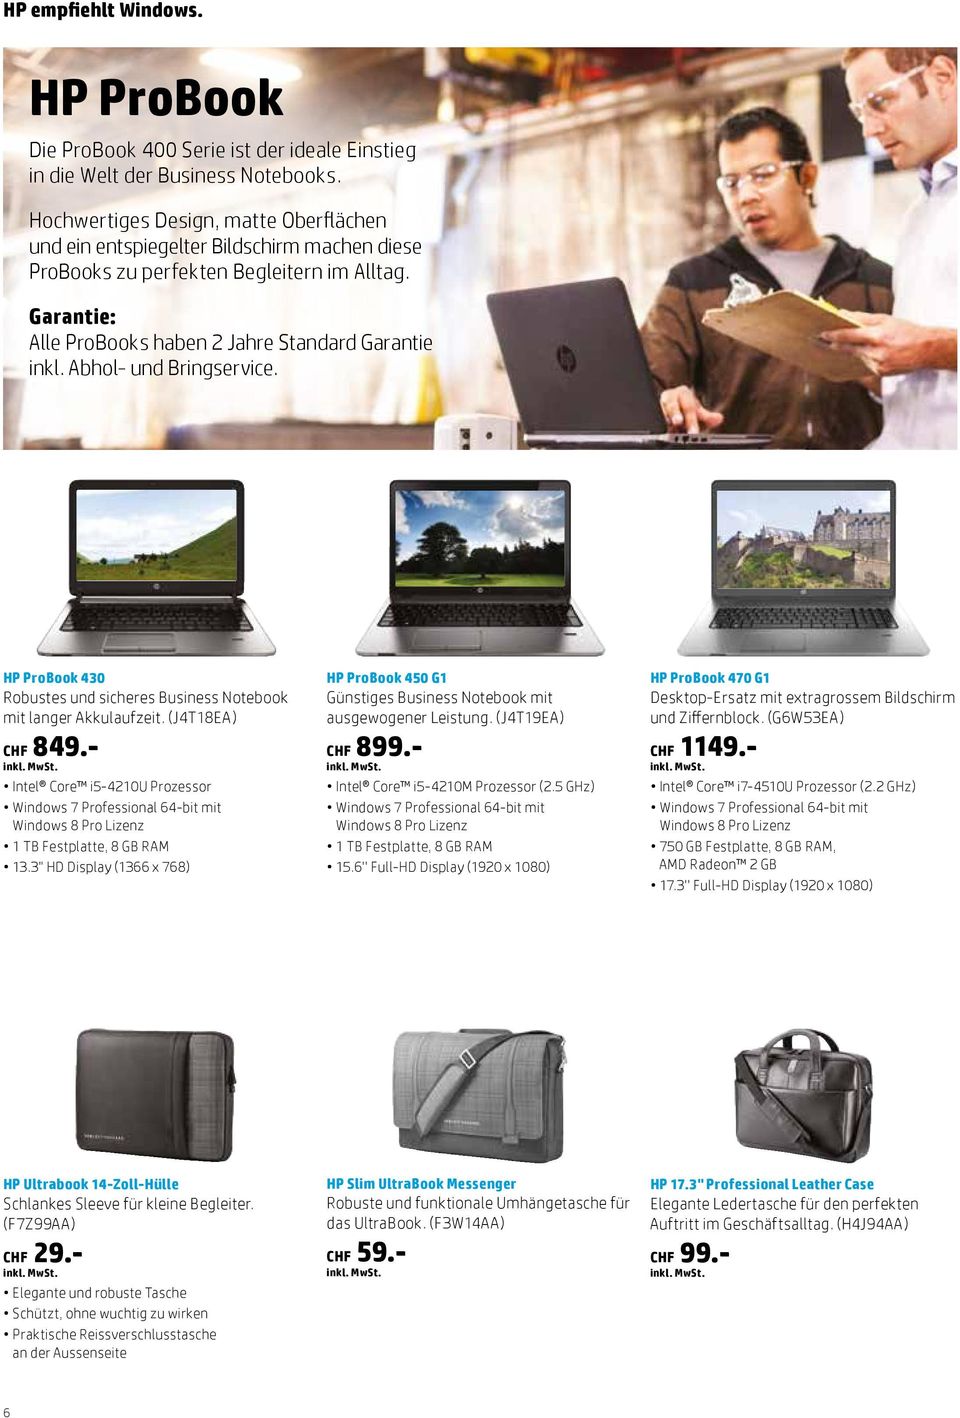 Abhol- und Bringservice. HP ProBook 430 Robustes und sicheres Business Notebook mit langer Akkulaufzeit. (J4T18EA) CHF 849.